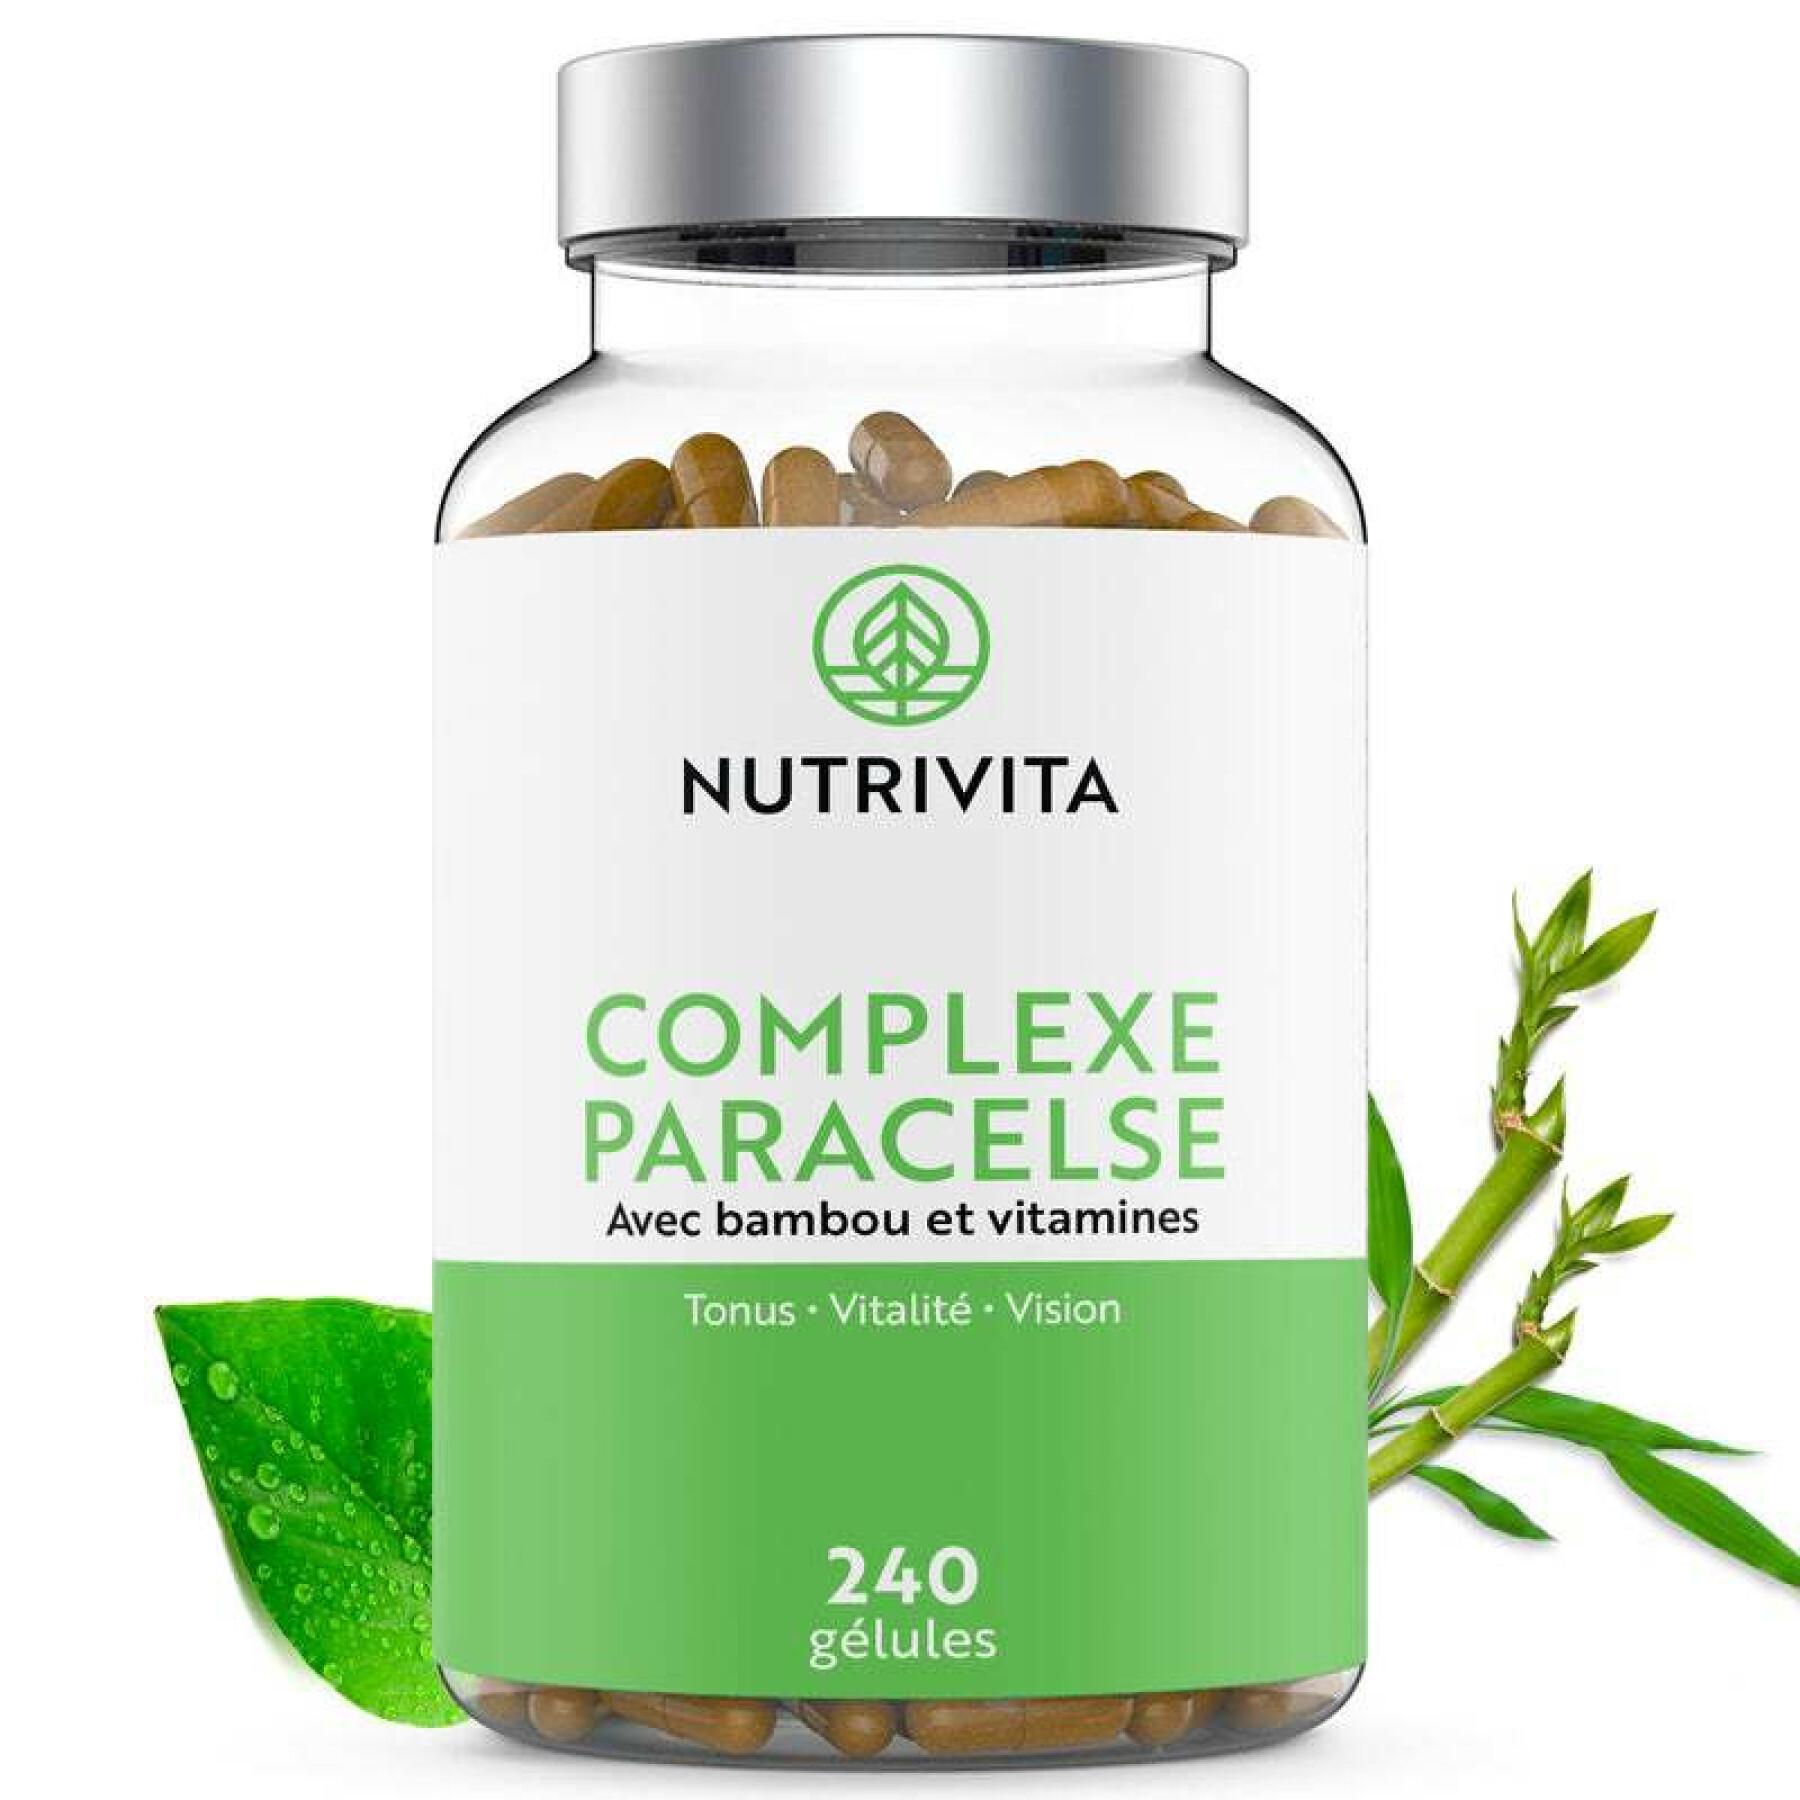 Complément alimentaire Complexe Paracelse - 240 gélules Nutrivita